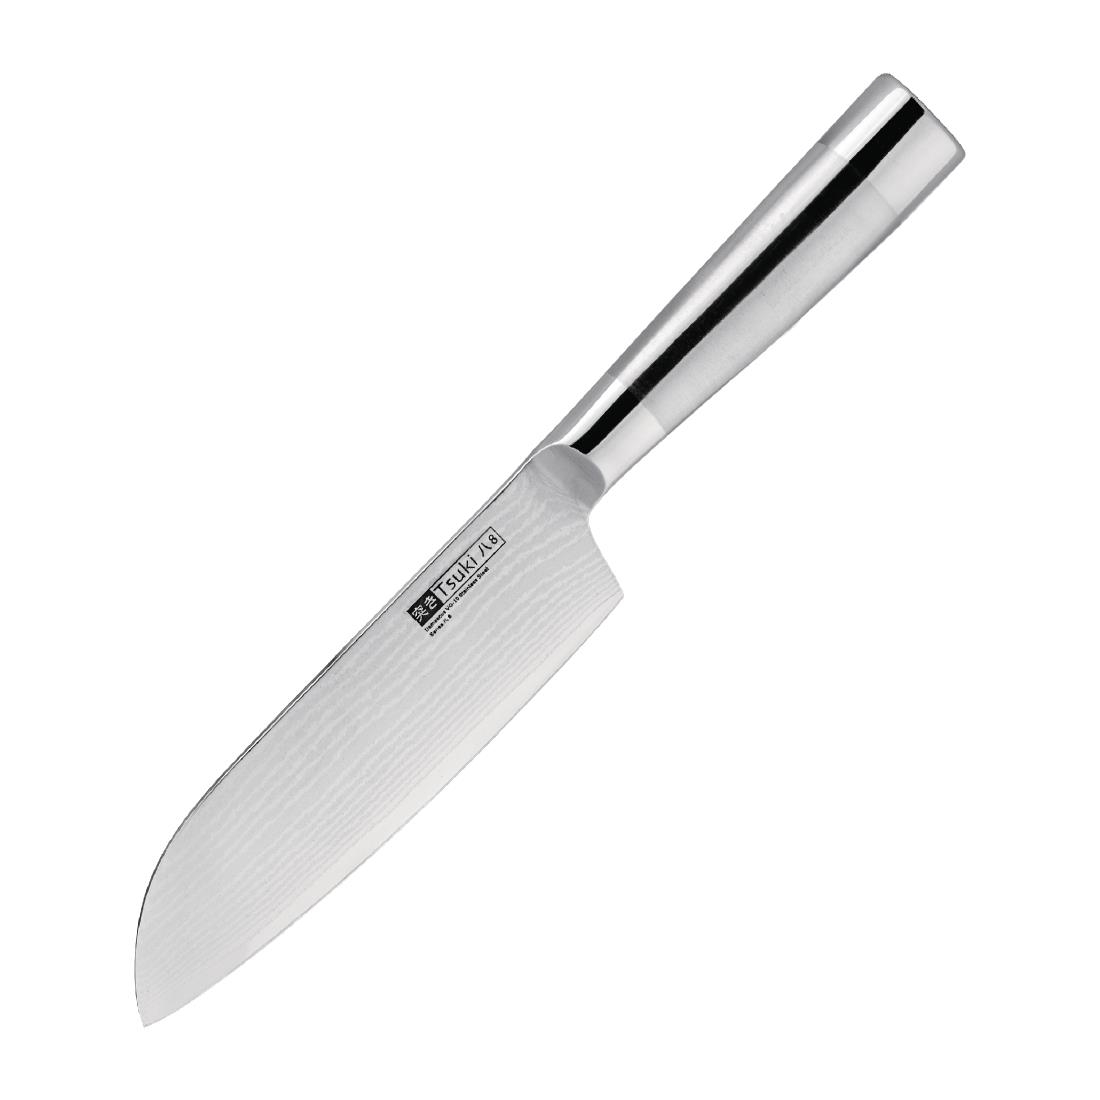 Vogue Tsuki Series 8 Santoku Knife 14cm